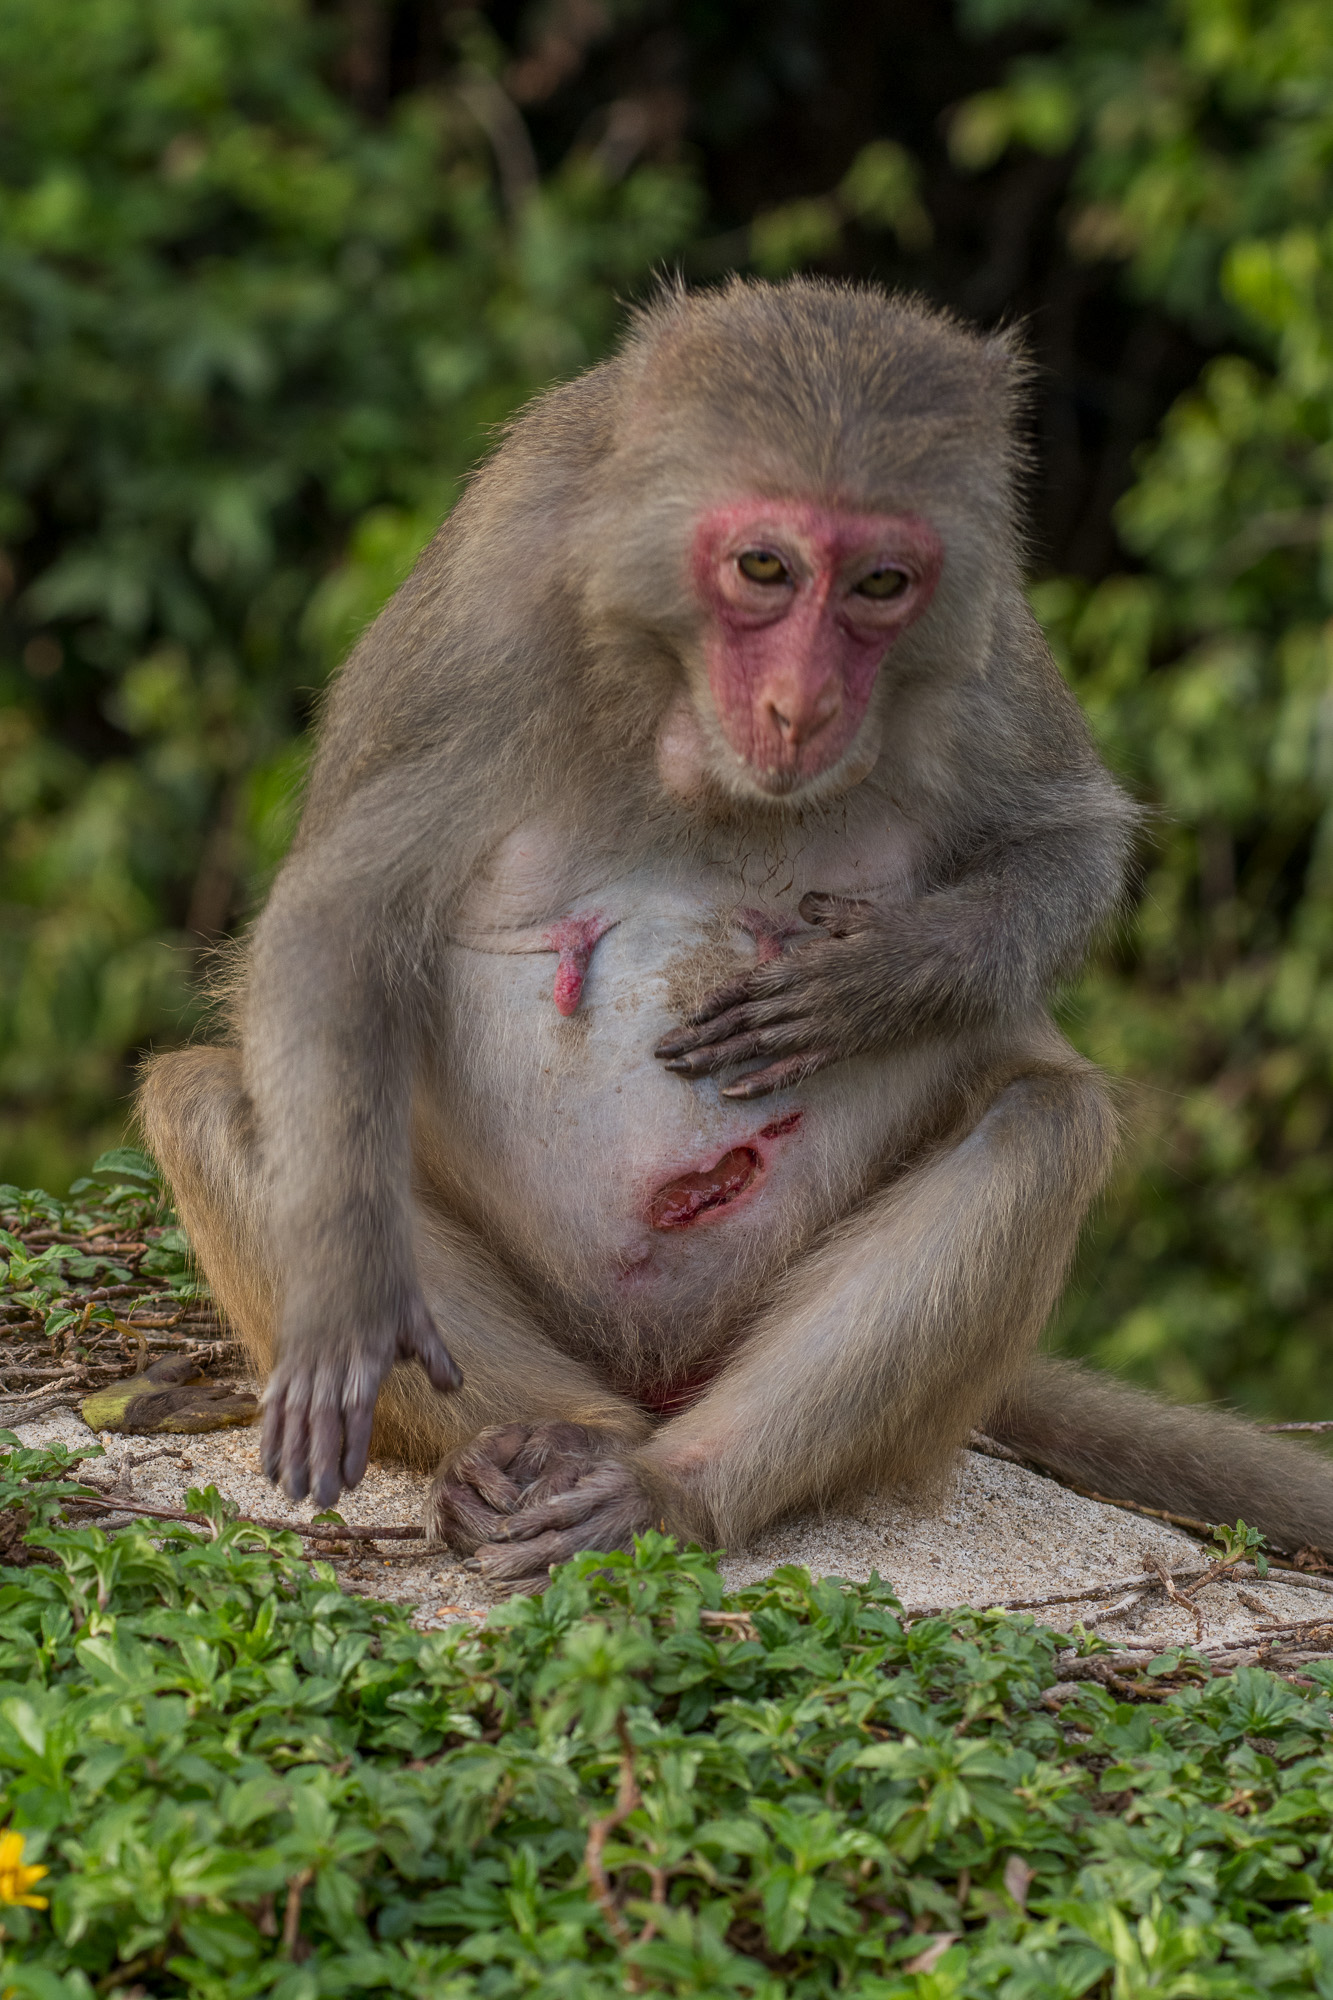 Nhìn vào hình ảnh khỉ con thương tích, bạn sẽ cảm thấy trái tim bị xúc động bởi sự hiền hậu và đáng yêu của chúng. Sự tò mò và sự thông minh của chúng sẽ khiến bạn muốn đến và chăm sóc chúng ngay lập tức.